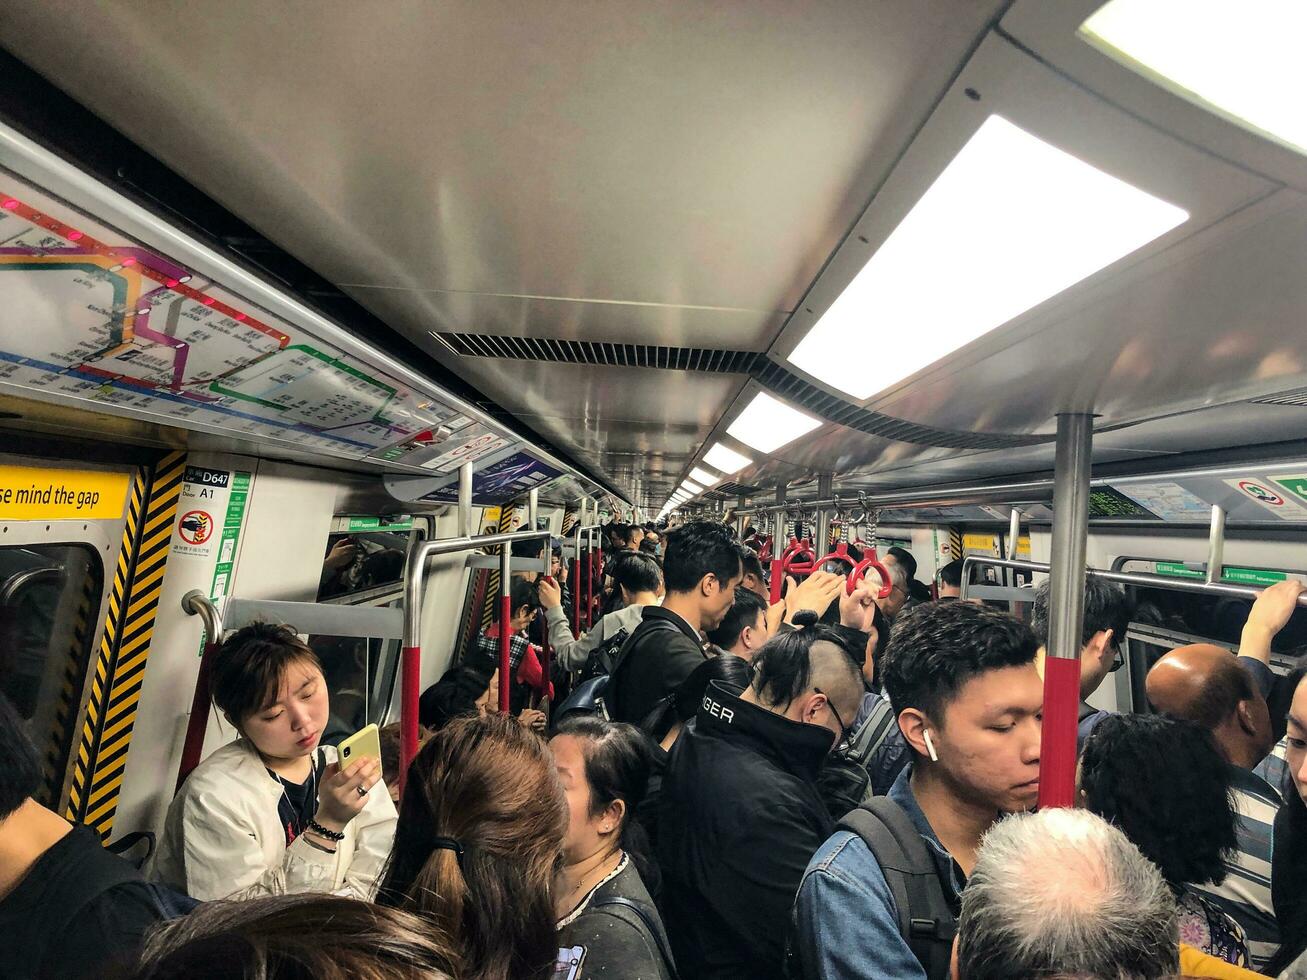 hong kong- mayo 19, 2019 el masa tránsito ferrocarril o metro es un mayor público transporte red servicio hong Kong concurrido prisa hora. foto